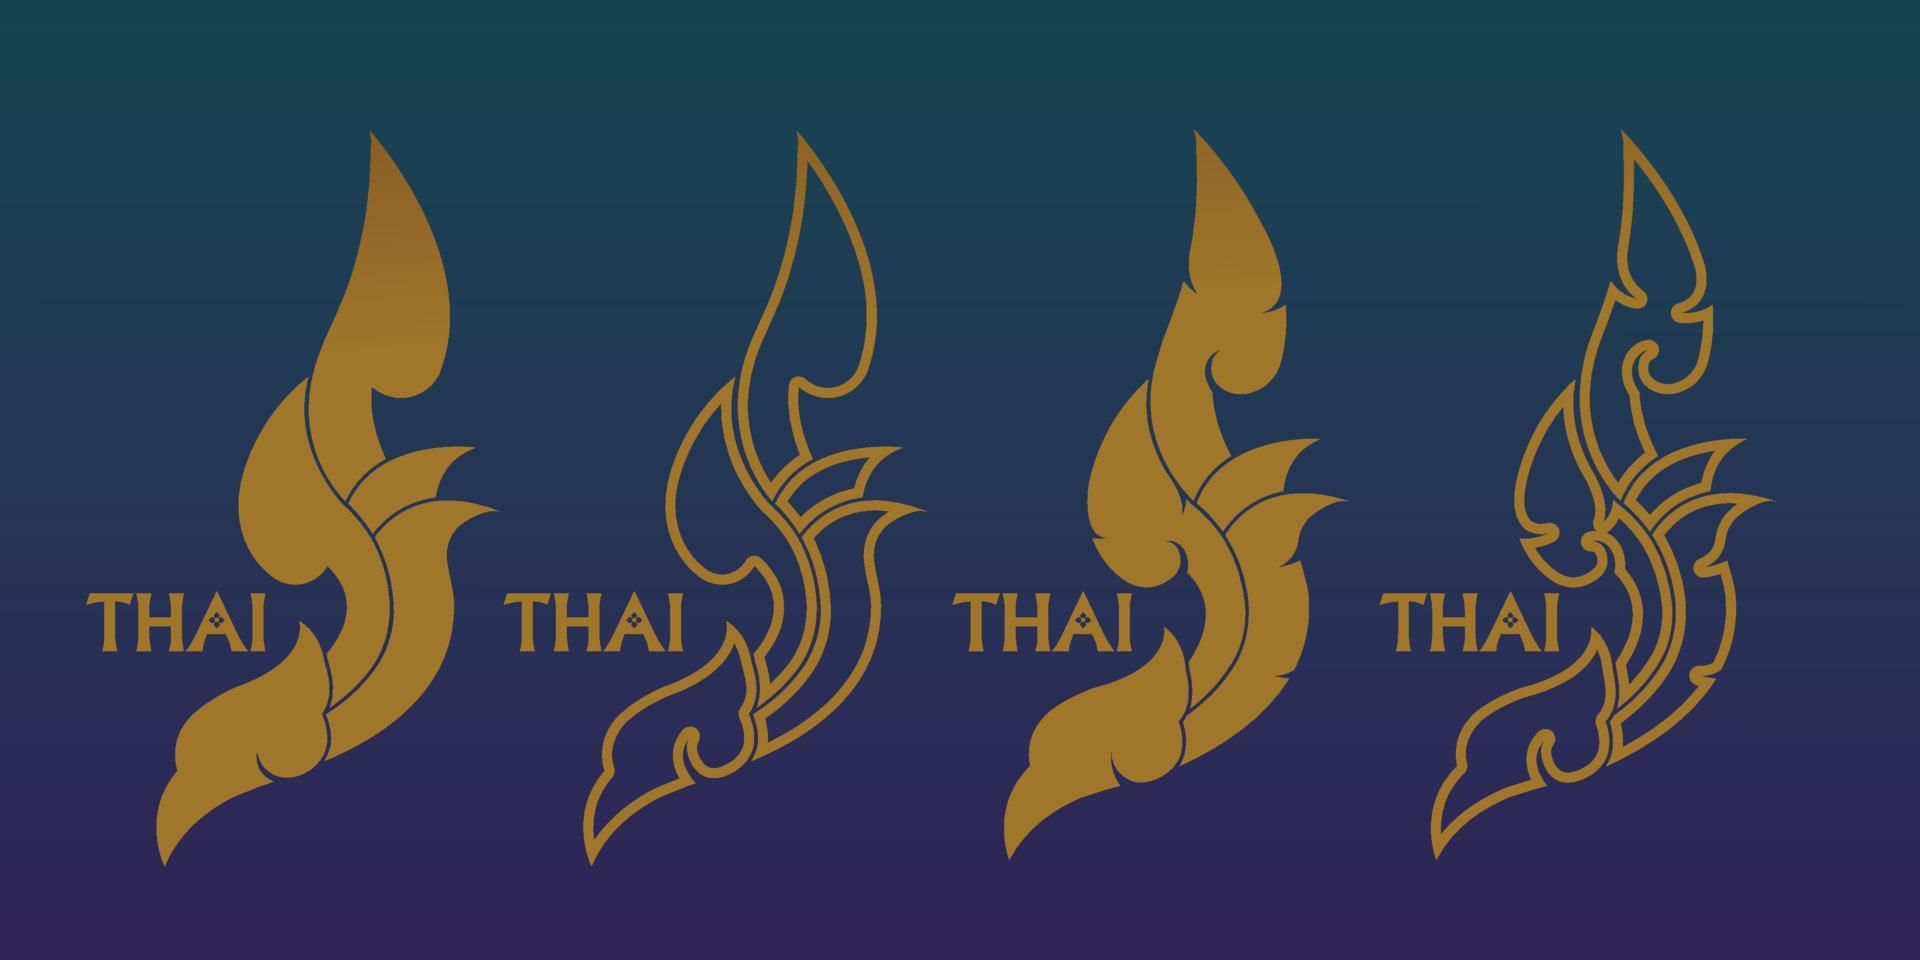 Thais kunsten element voor Thais grafisch ontwerp vector illustratie.